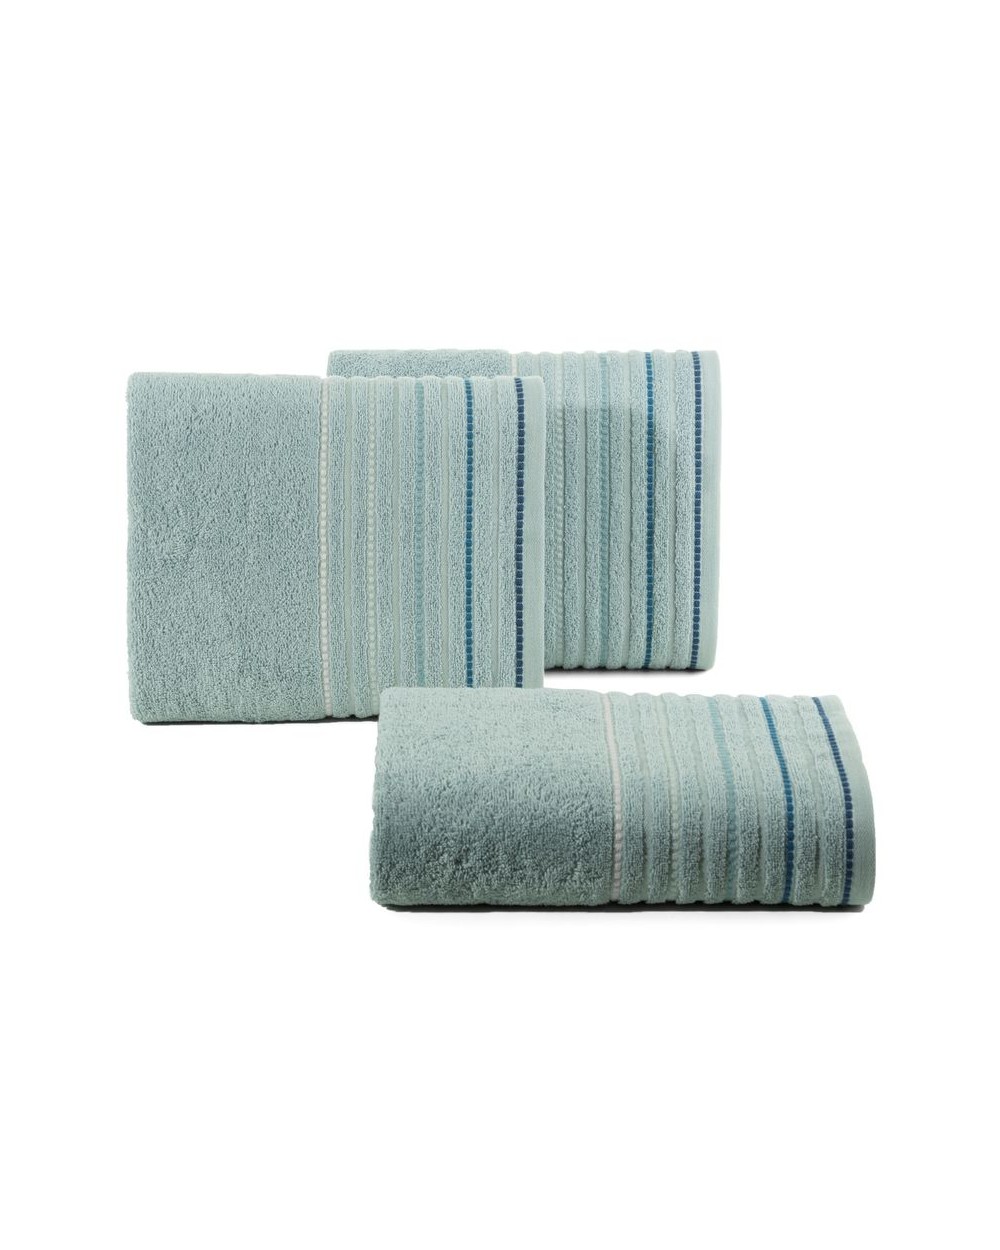 Ręcznik bawełna 50x90 Iza niebieski